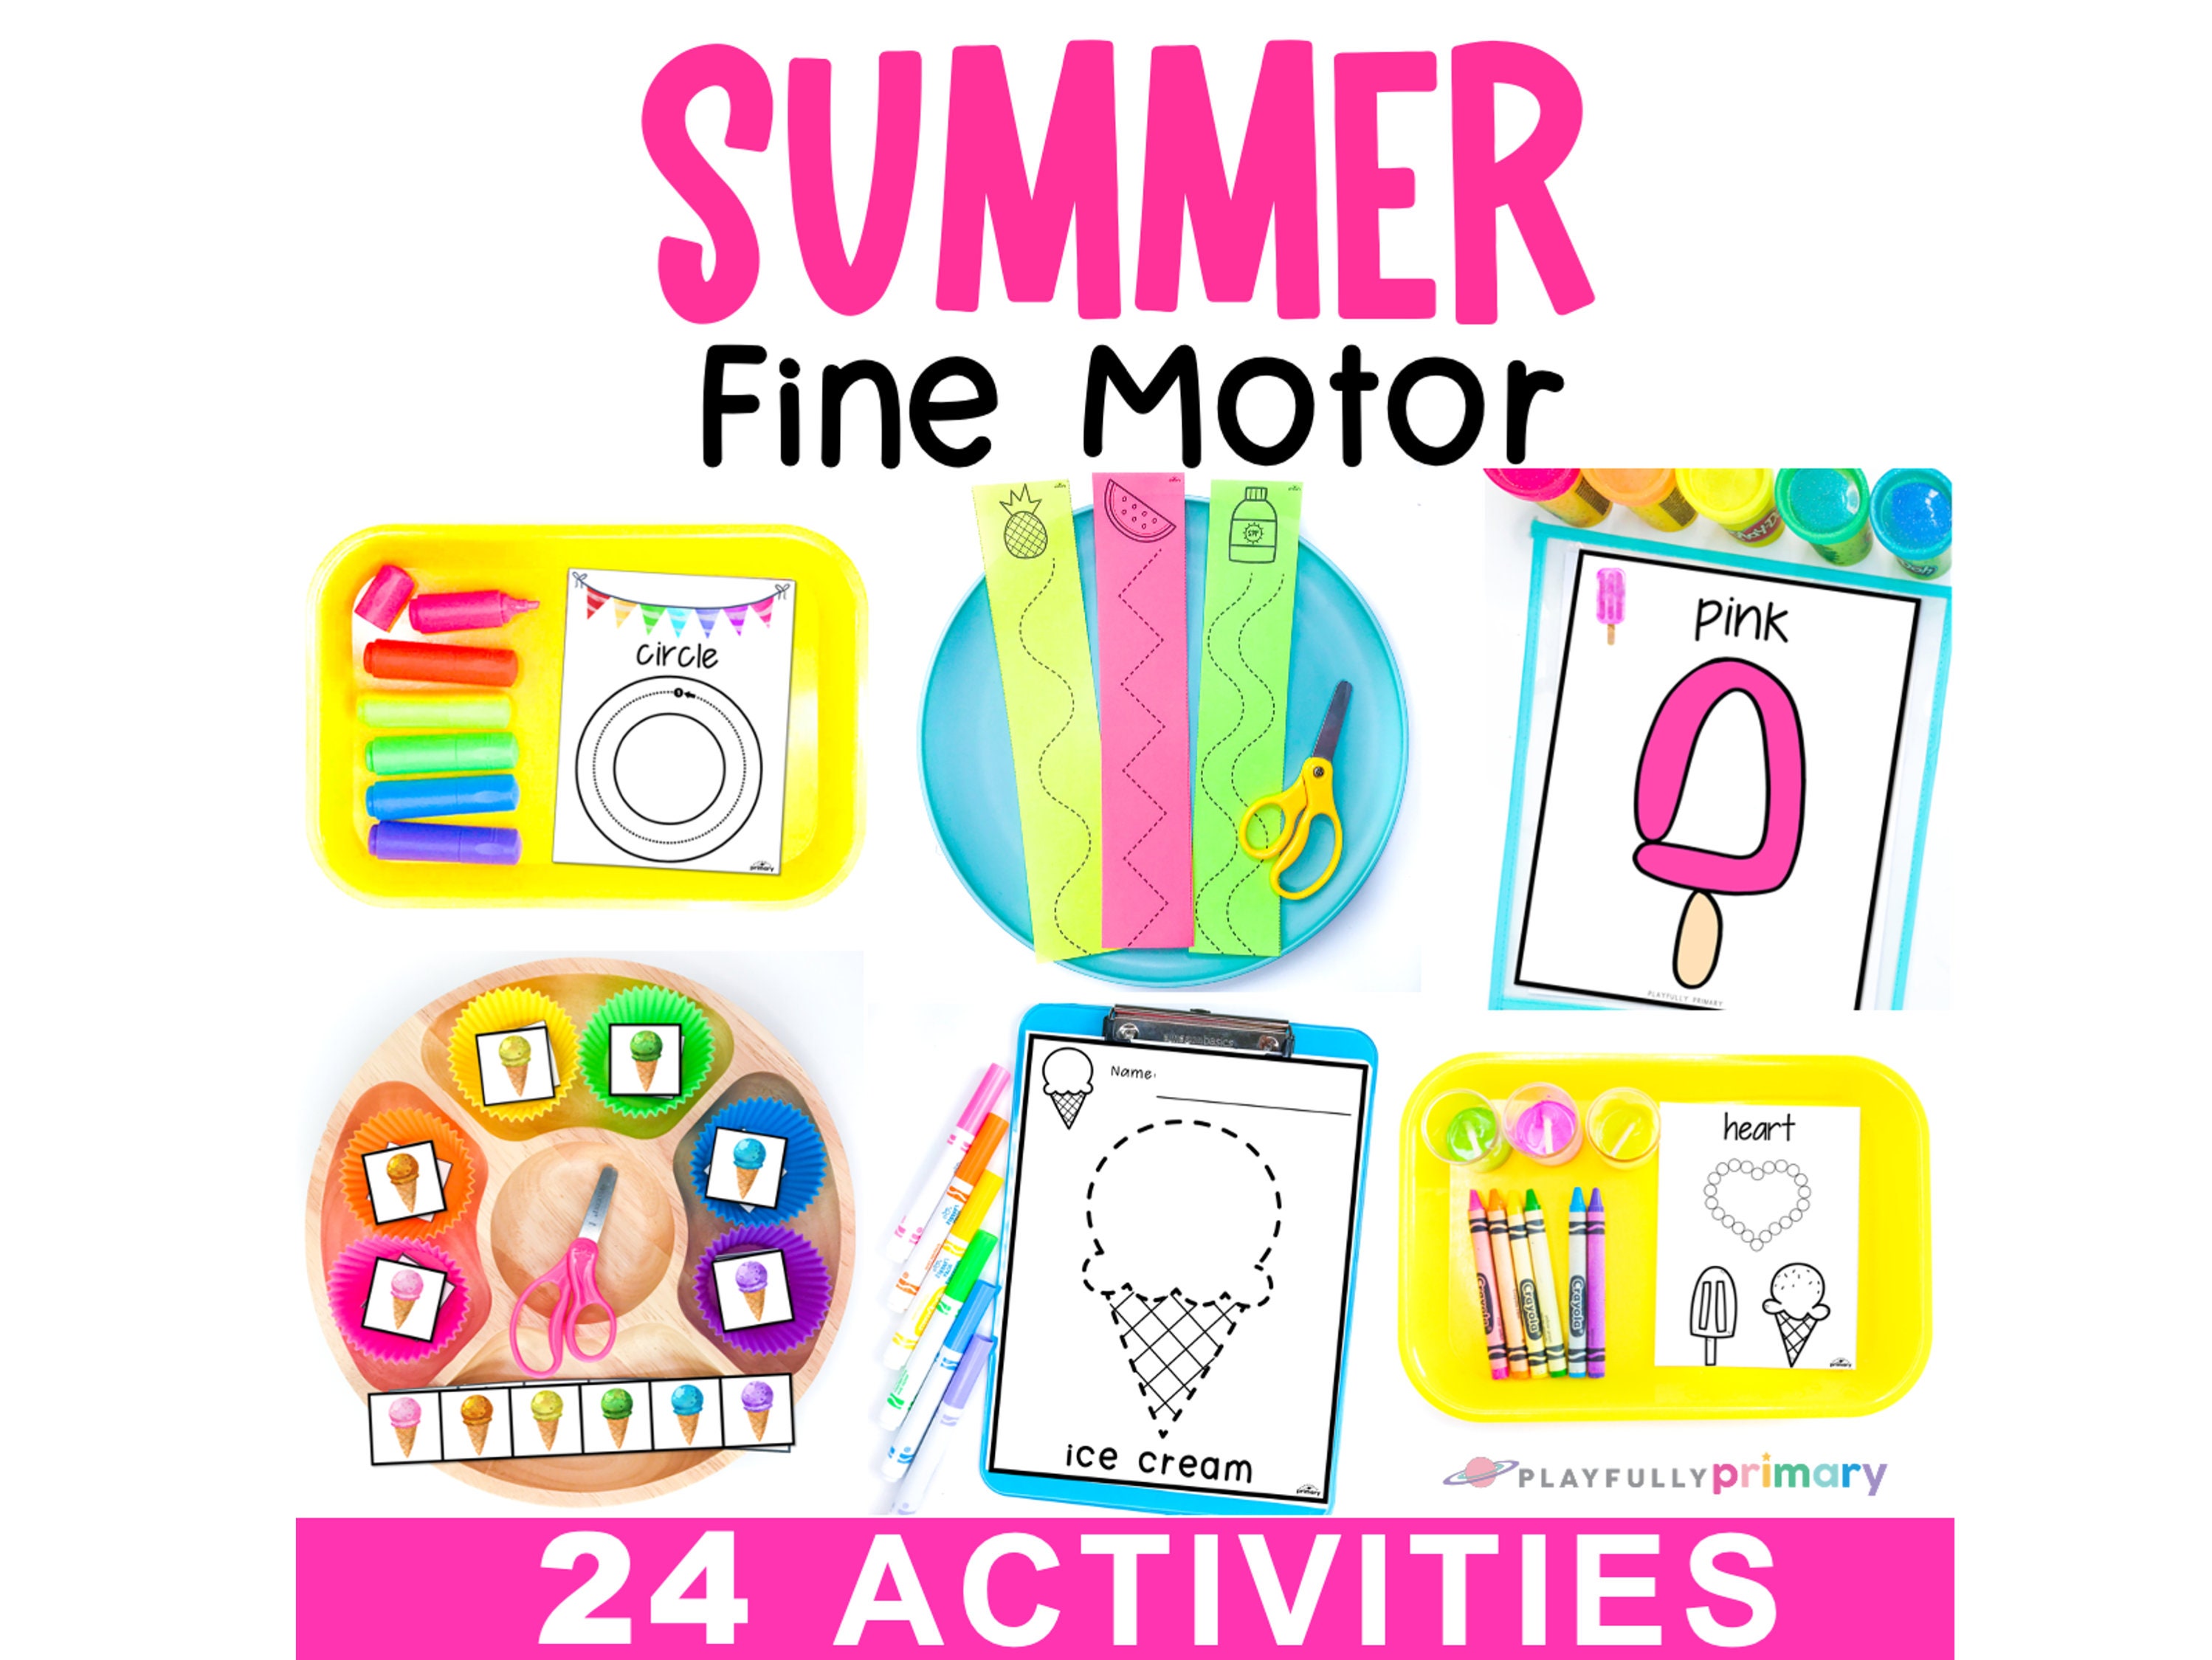 Summer Camp Kits - Summer Camp Curriculum & Supplies